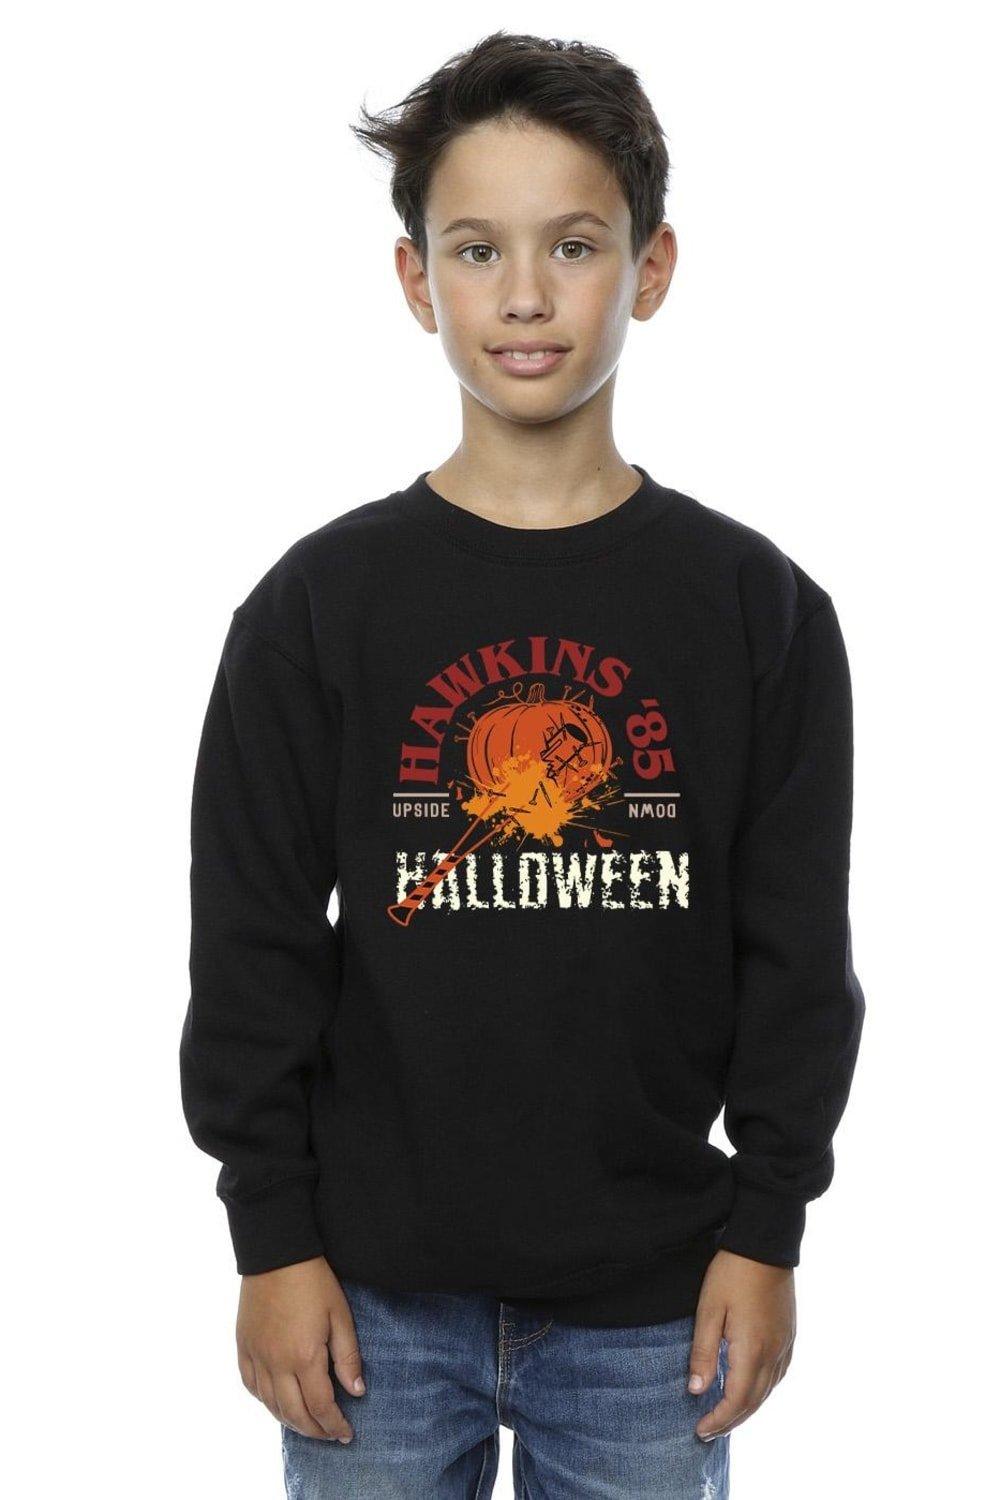 Stranger Things Hawkins Halloween Sweatshirt